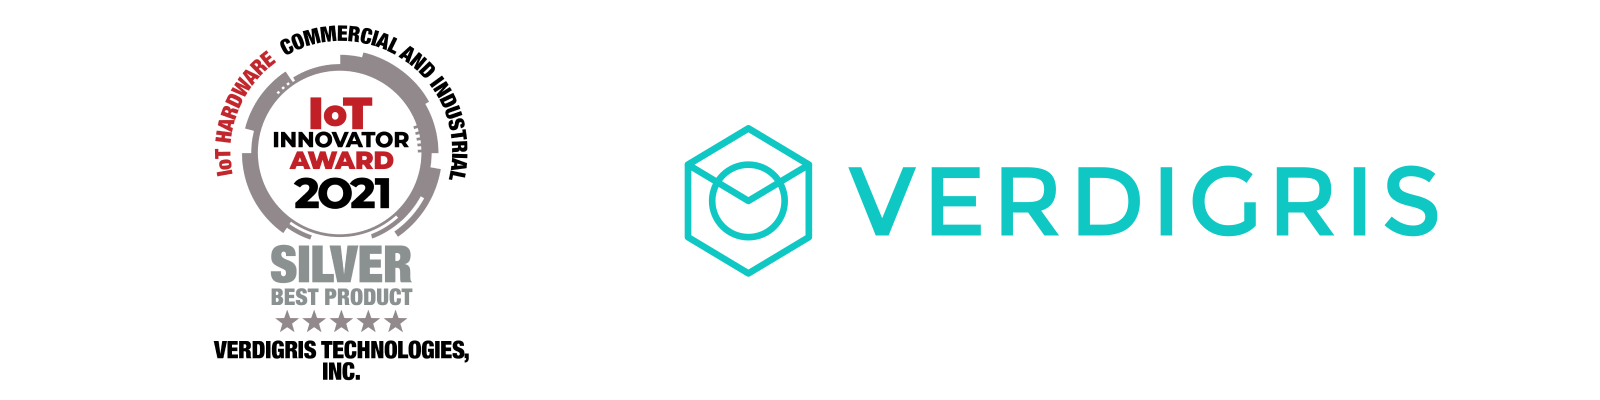 Verdigris Wins 2021 IoT Innovator Silver Award